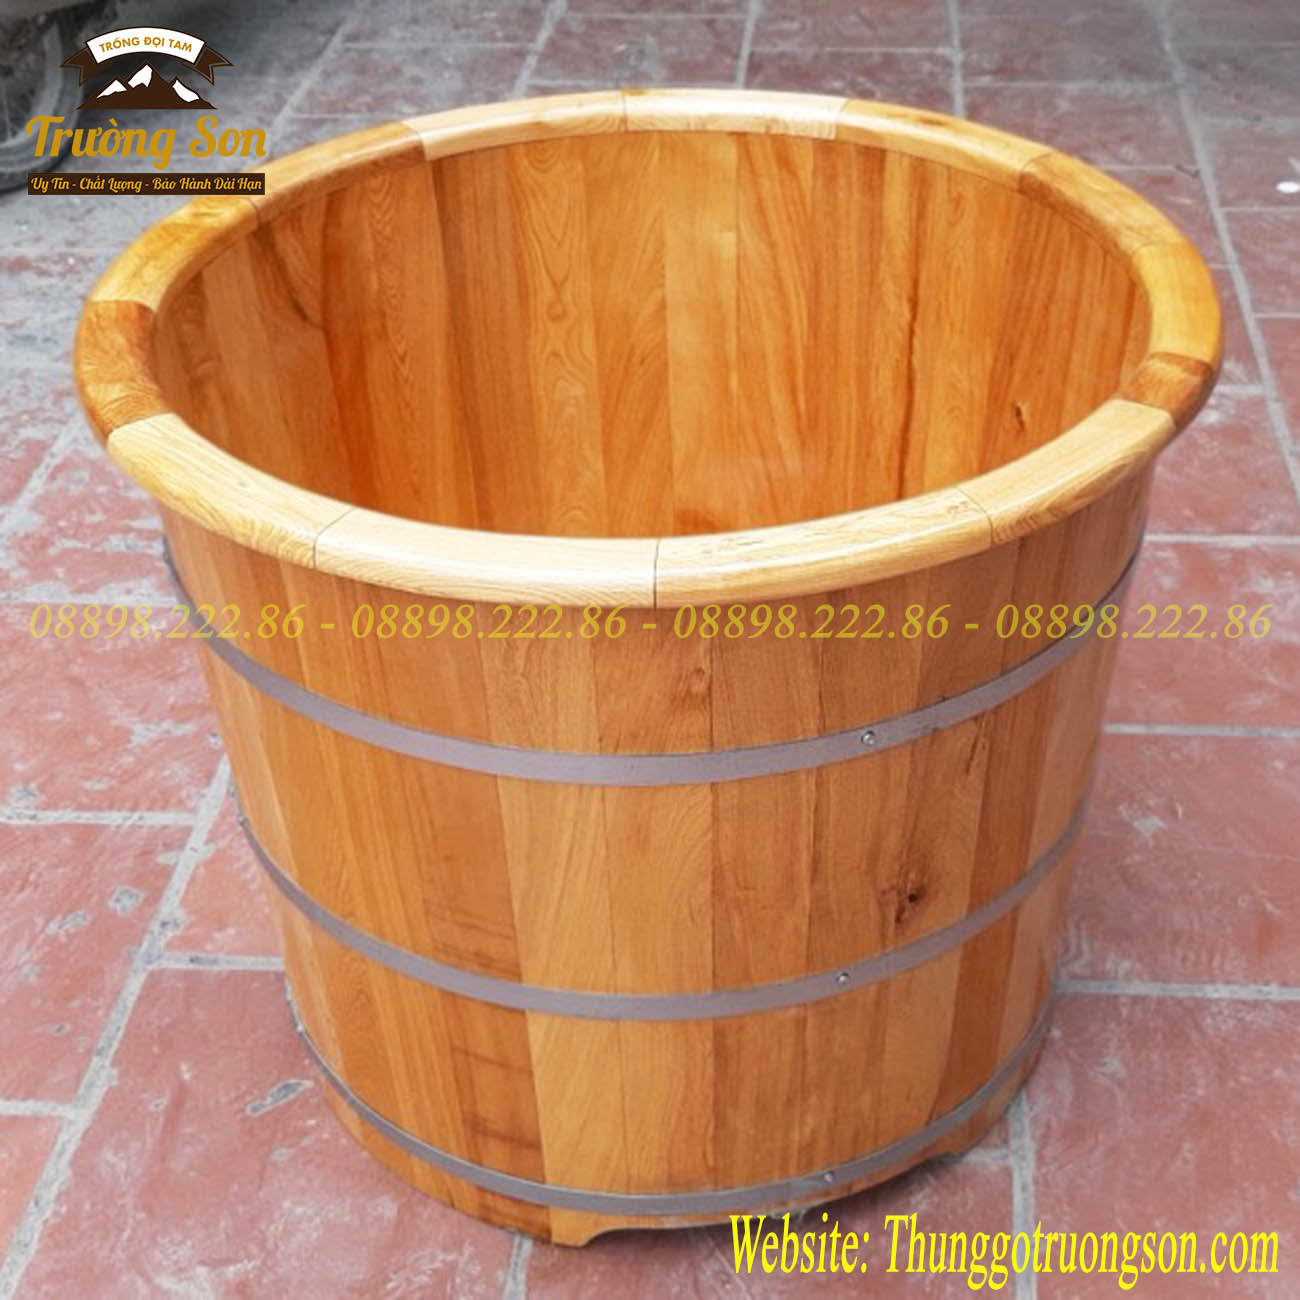 Bồn tắm gỗ dáng đứng sẽ mang đến cho bạn một không gian tắm xoa dịu và mát mẻ hơn, cùng với sự lịch sự và đẳng cấp của gỗ tự nhiên để tăng cường sức khỏe và tinh thần của bạn.